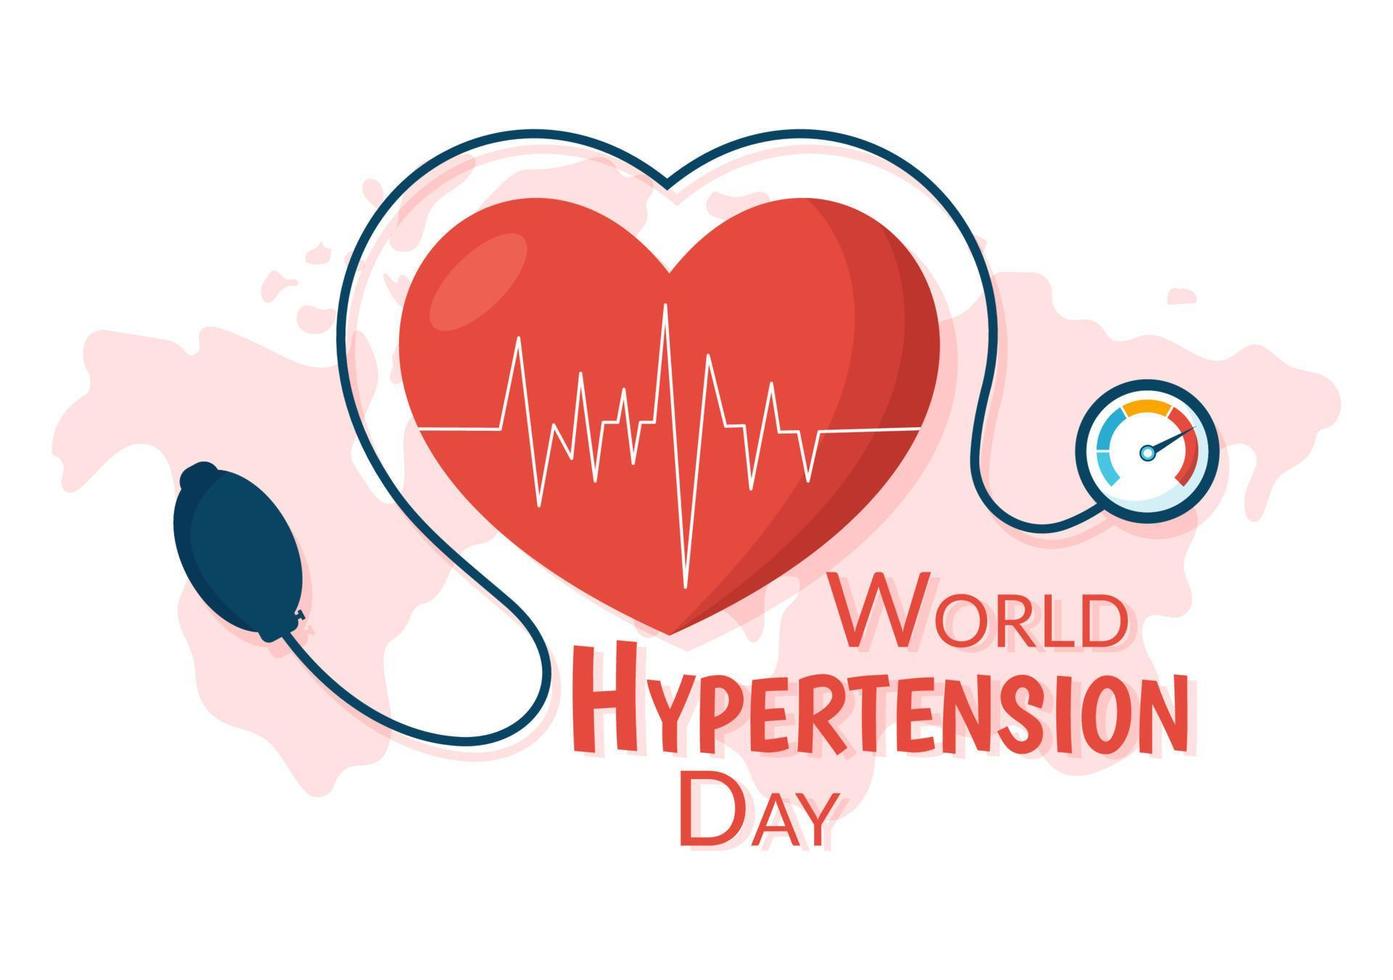 mundo hipertensión día en mayo 17 ilustración con alto sangre presión y rojo amor imagen en plano dibujos animados mano dibujado para aterrizaje página plantillas vector